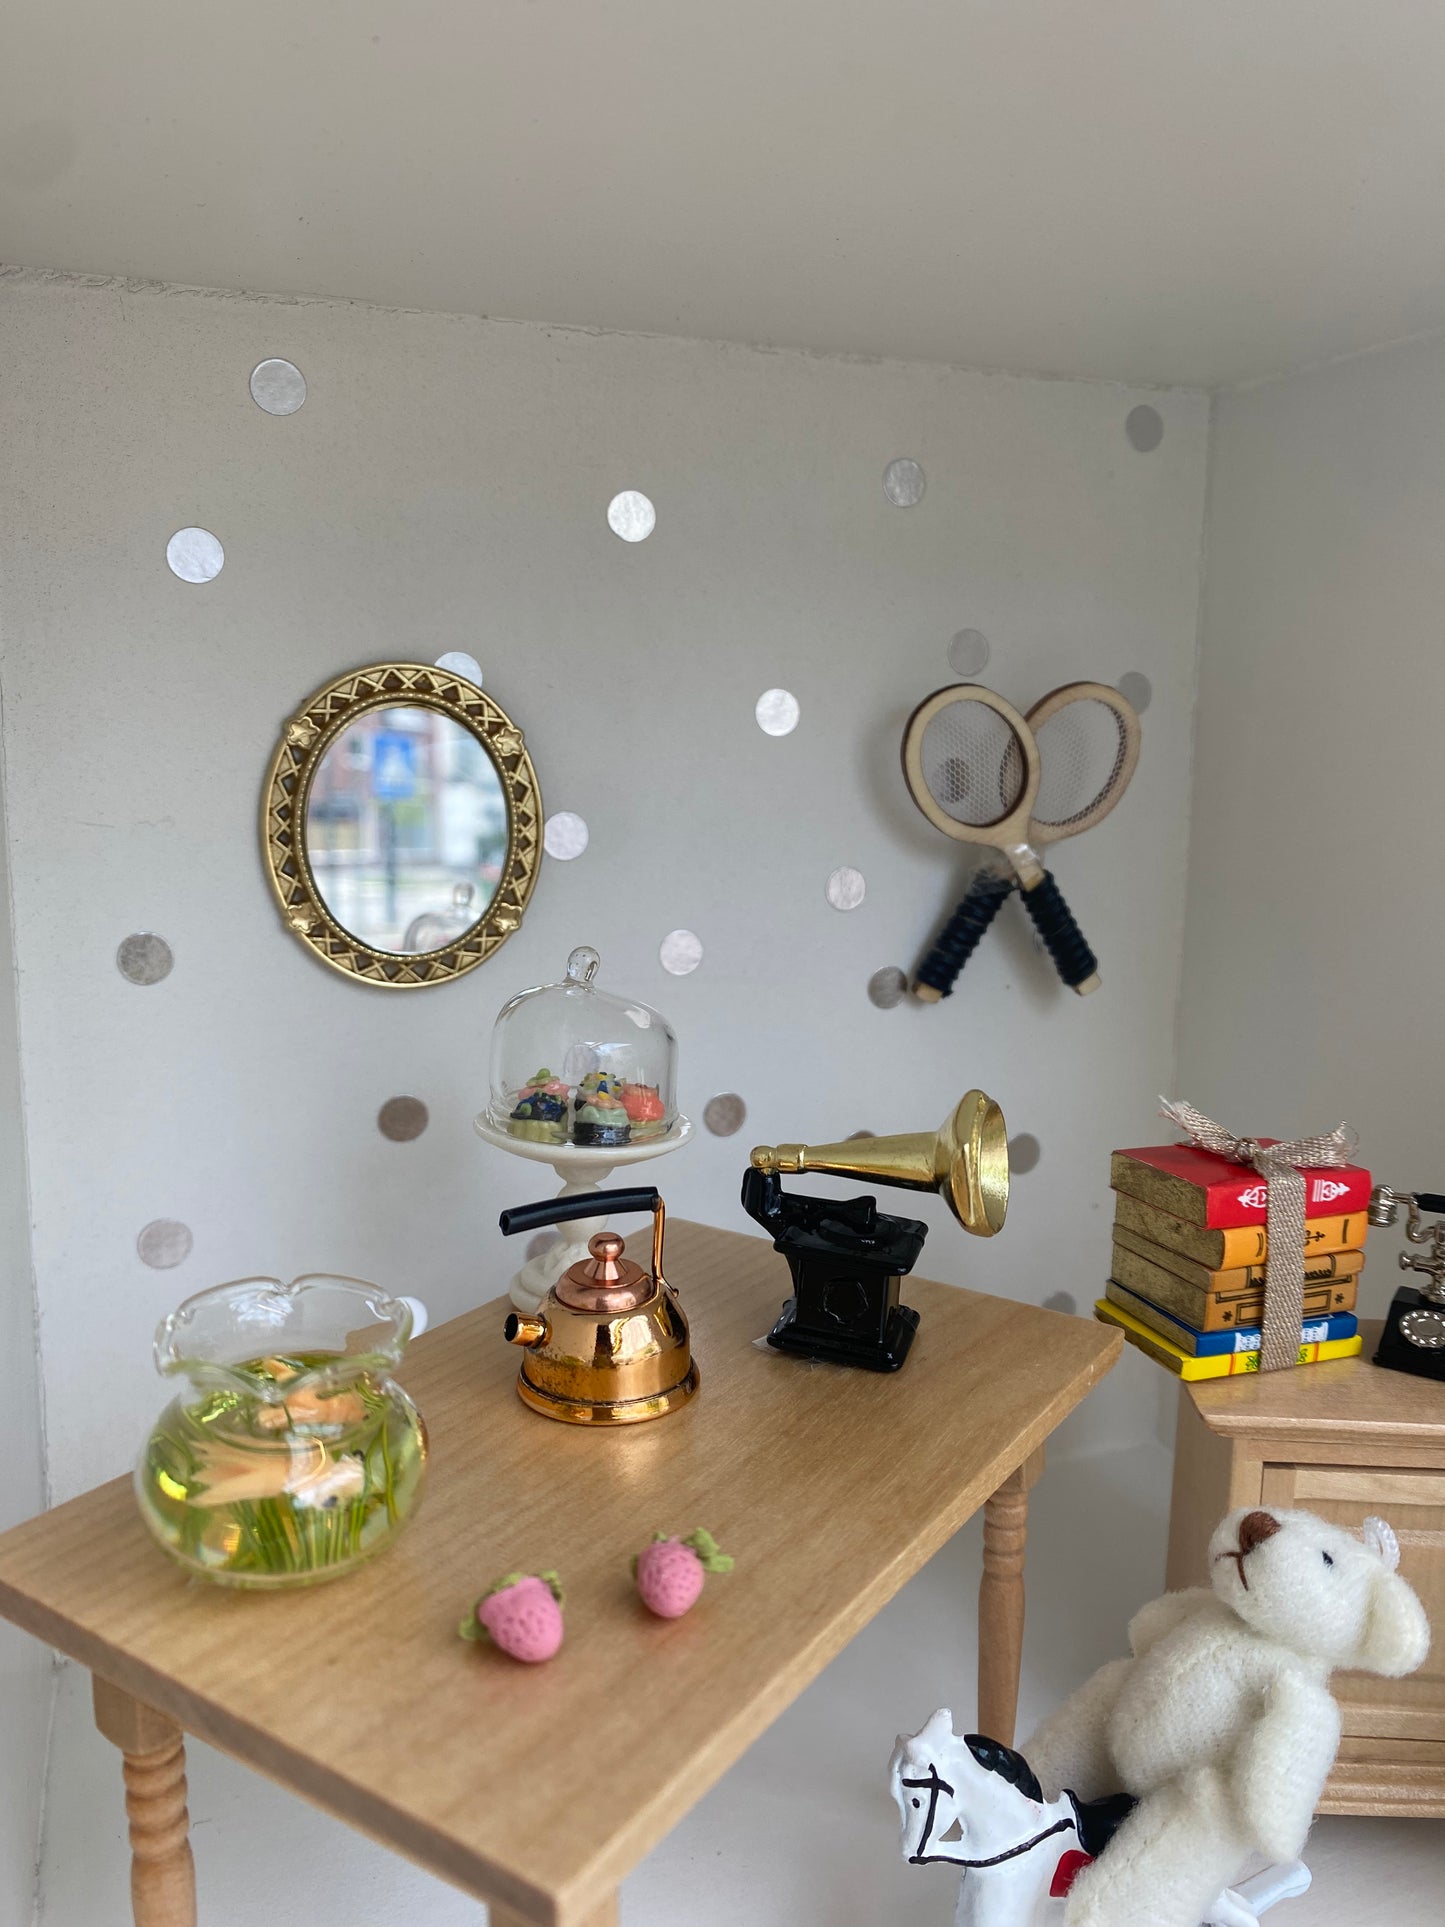 Oval Spiegel, Miniature für das Puppenhaus